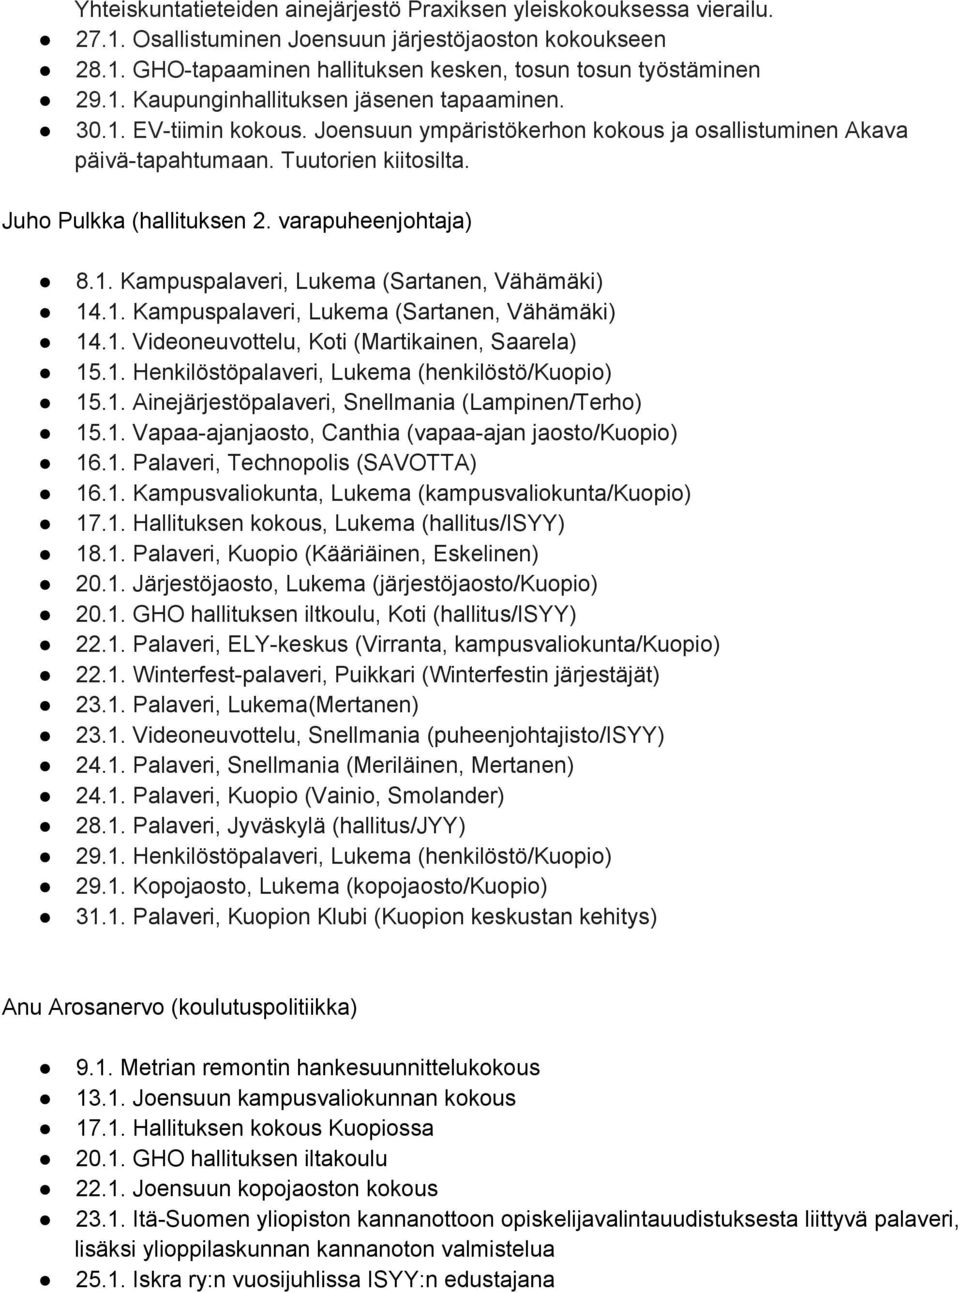 1. Kampuspalaveri, Lukema (Sartanen, Vähämäki) 14.1. Videoneuvottelu, Koti (Martikainen, Saarela) 15.1. Henkilöstöpalaveri, Lukema (henkilöstö/kuopio) 15.1. Ainejärjestöpalaveri, Snellmania (Lampinen/Terho) 15.